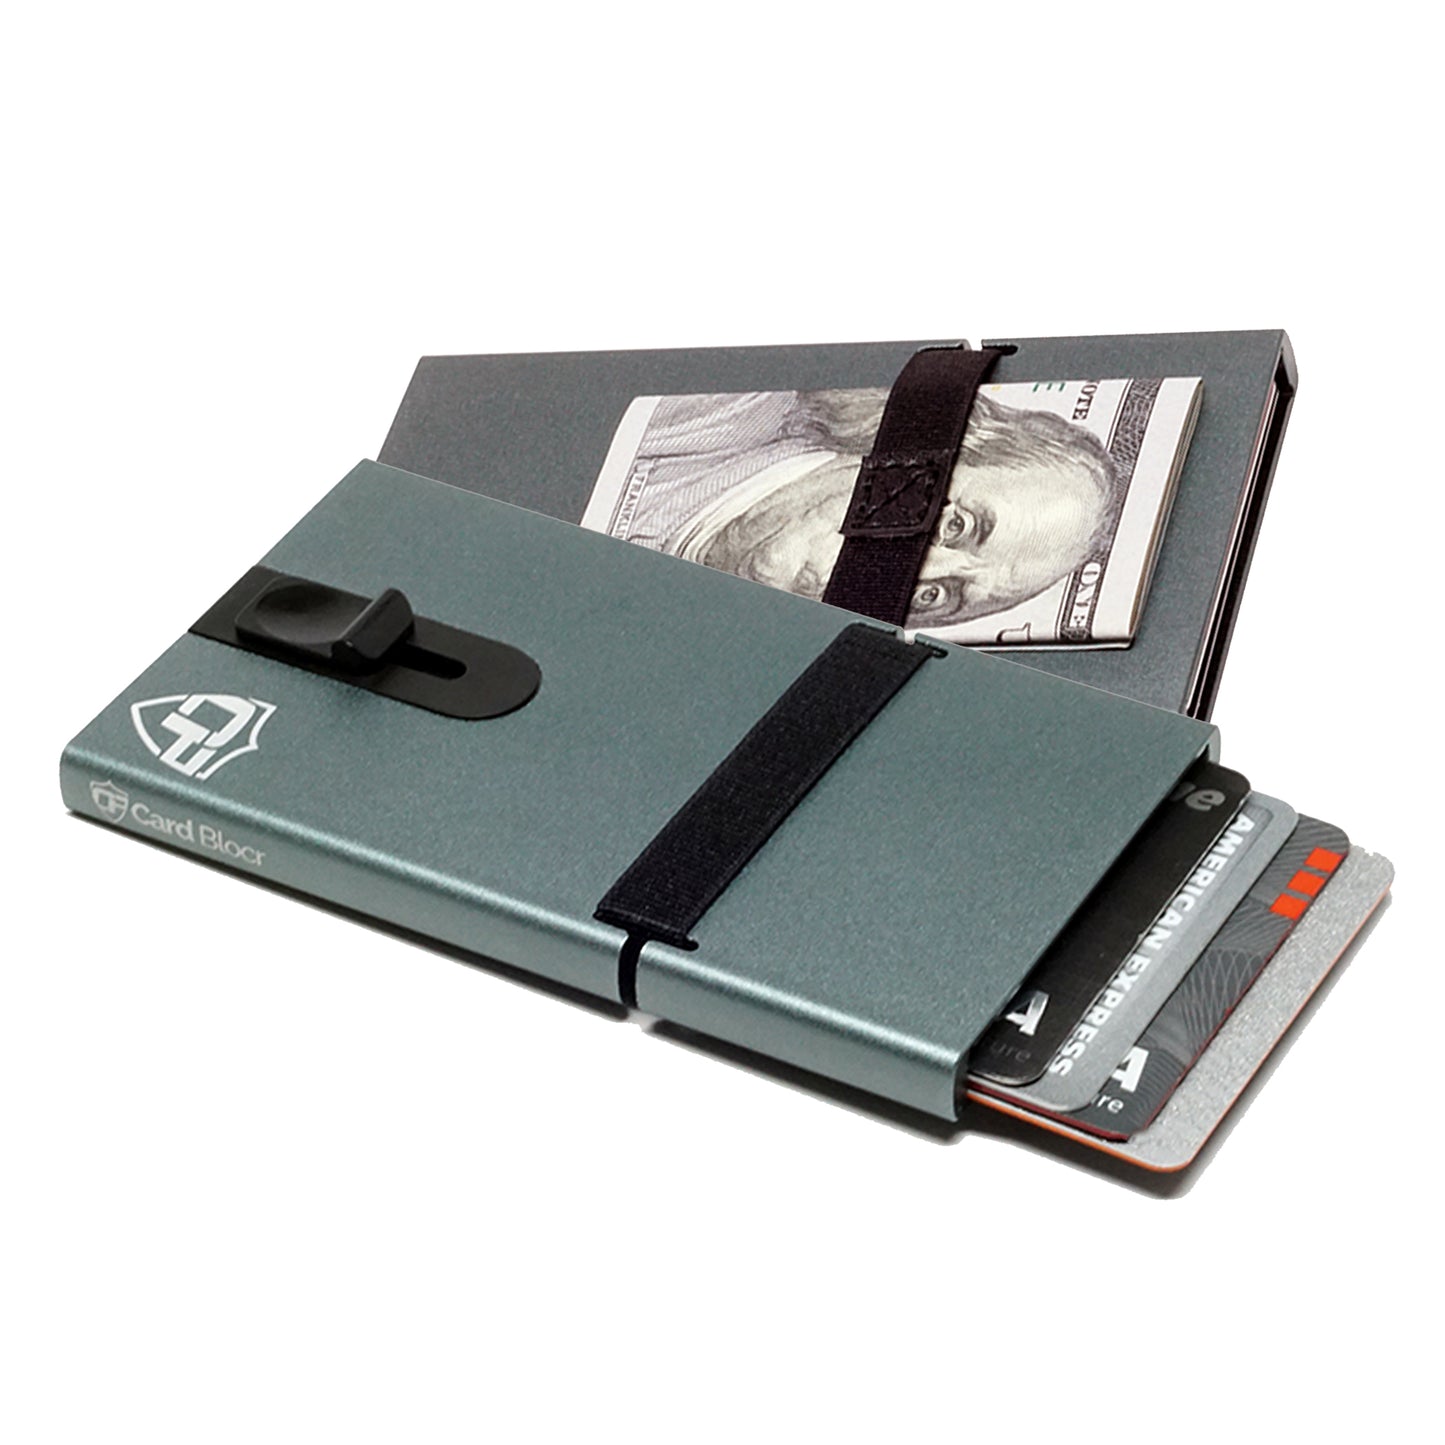 Card Blocr Metal Credit Card Holder in Titanium Color | RFID Wallet Cash